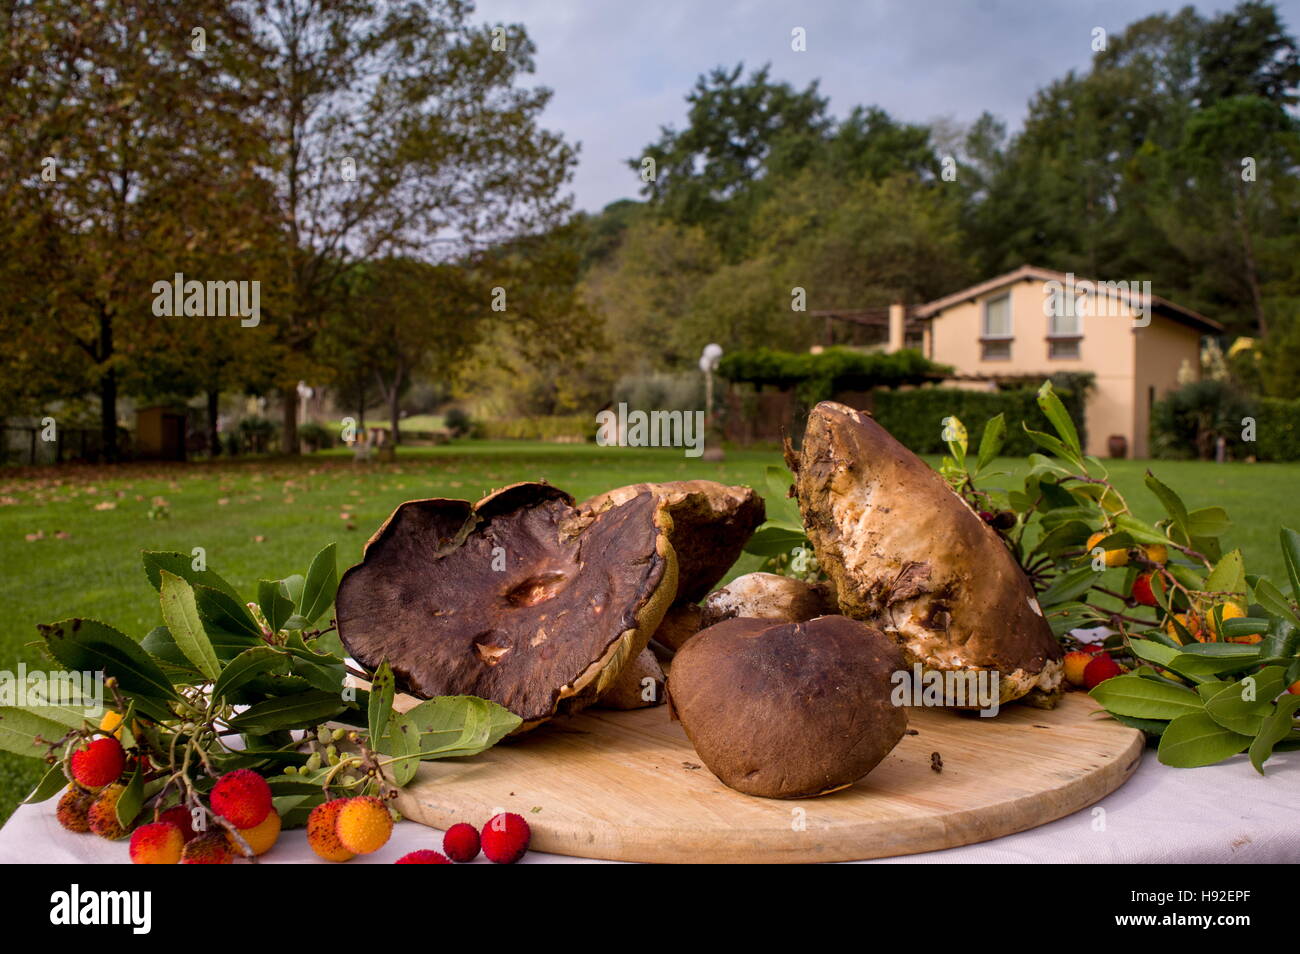 Portobello mushrooms in a cutting board in a park outdoor - Funghi Porcini su tagliere in esterni in un parco in toscana Stock Photo